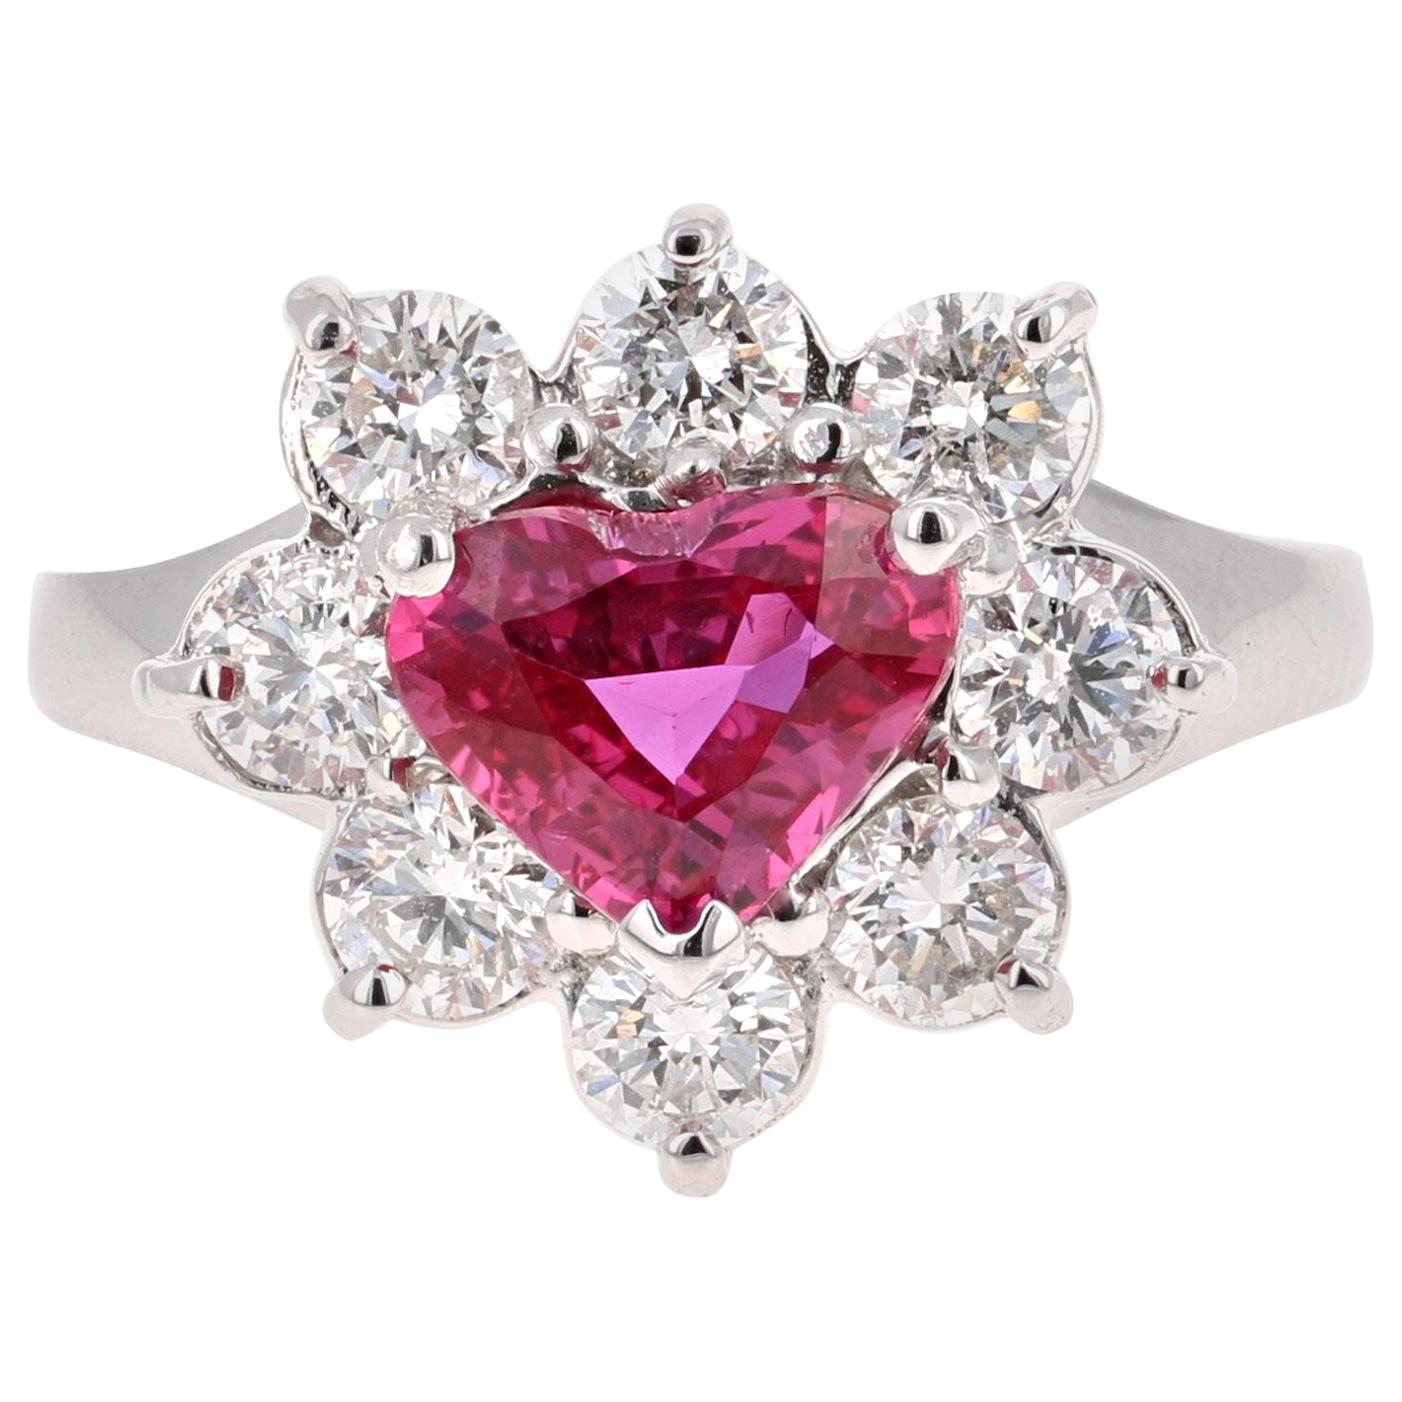 GIA Certified 2.89 Carat Heart Cut Ruby Diamond Ring 18 Karat White Gold